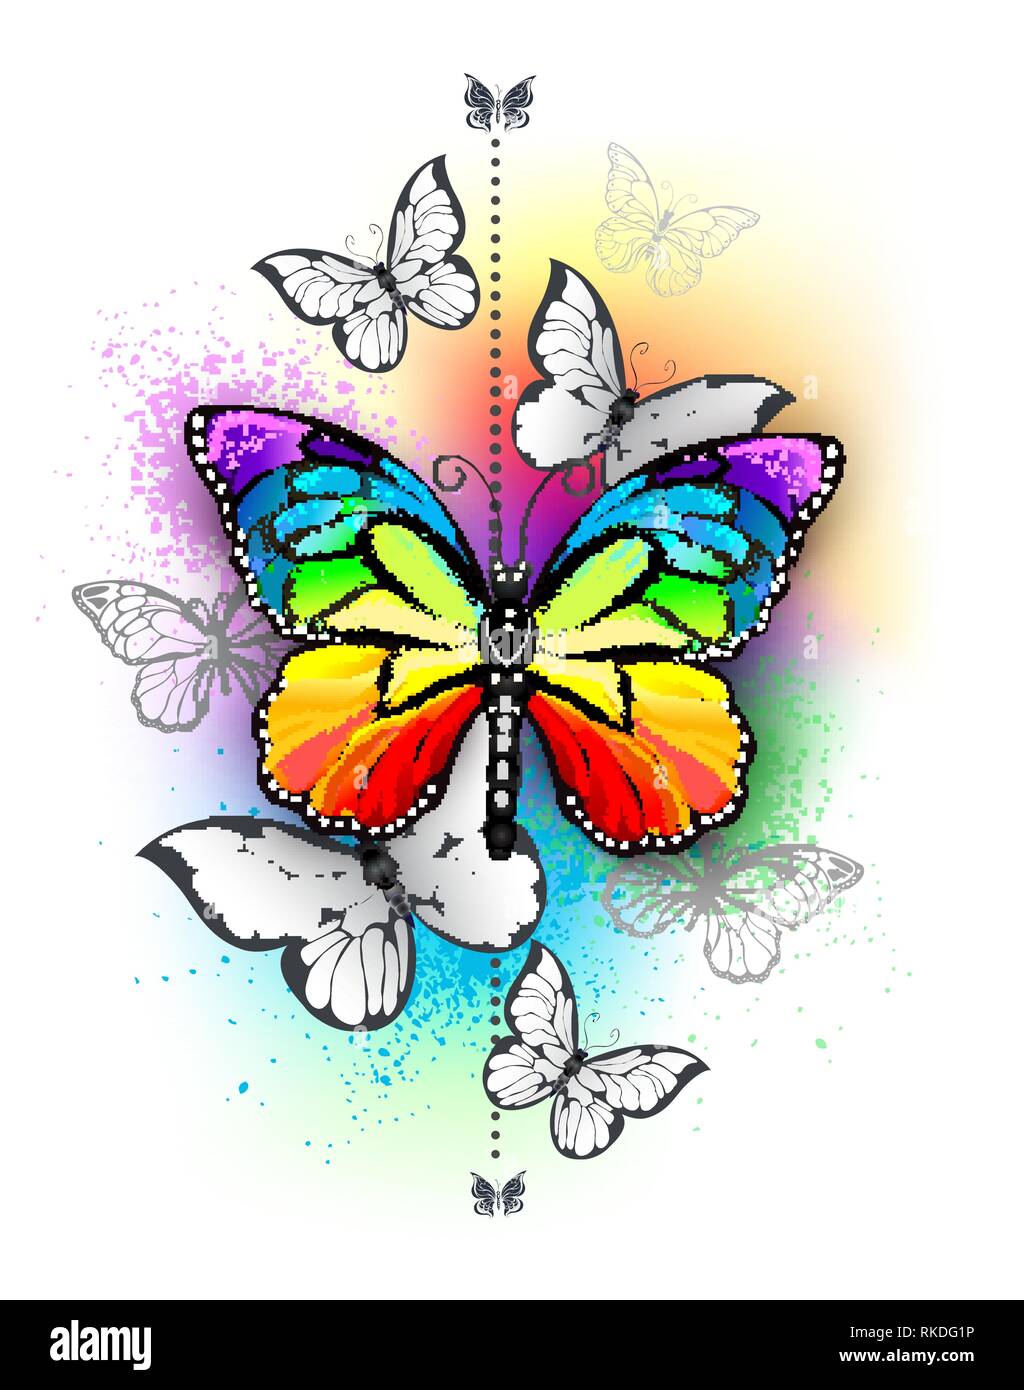 Vertikale Komposition mit Rainbow und weiße Schmetterlinge auf schillernden bunten Hintergrund. Tattoo Stil. Stock Vektor